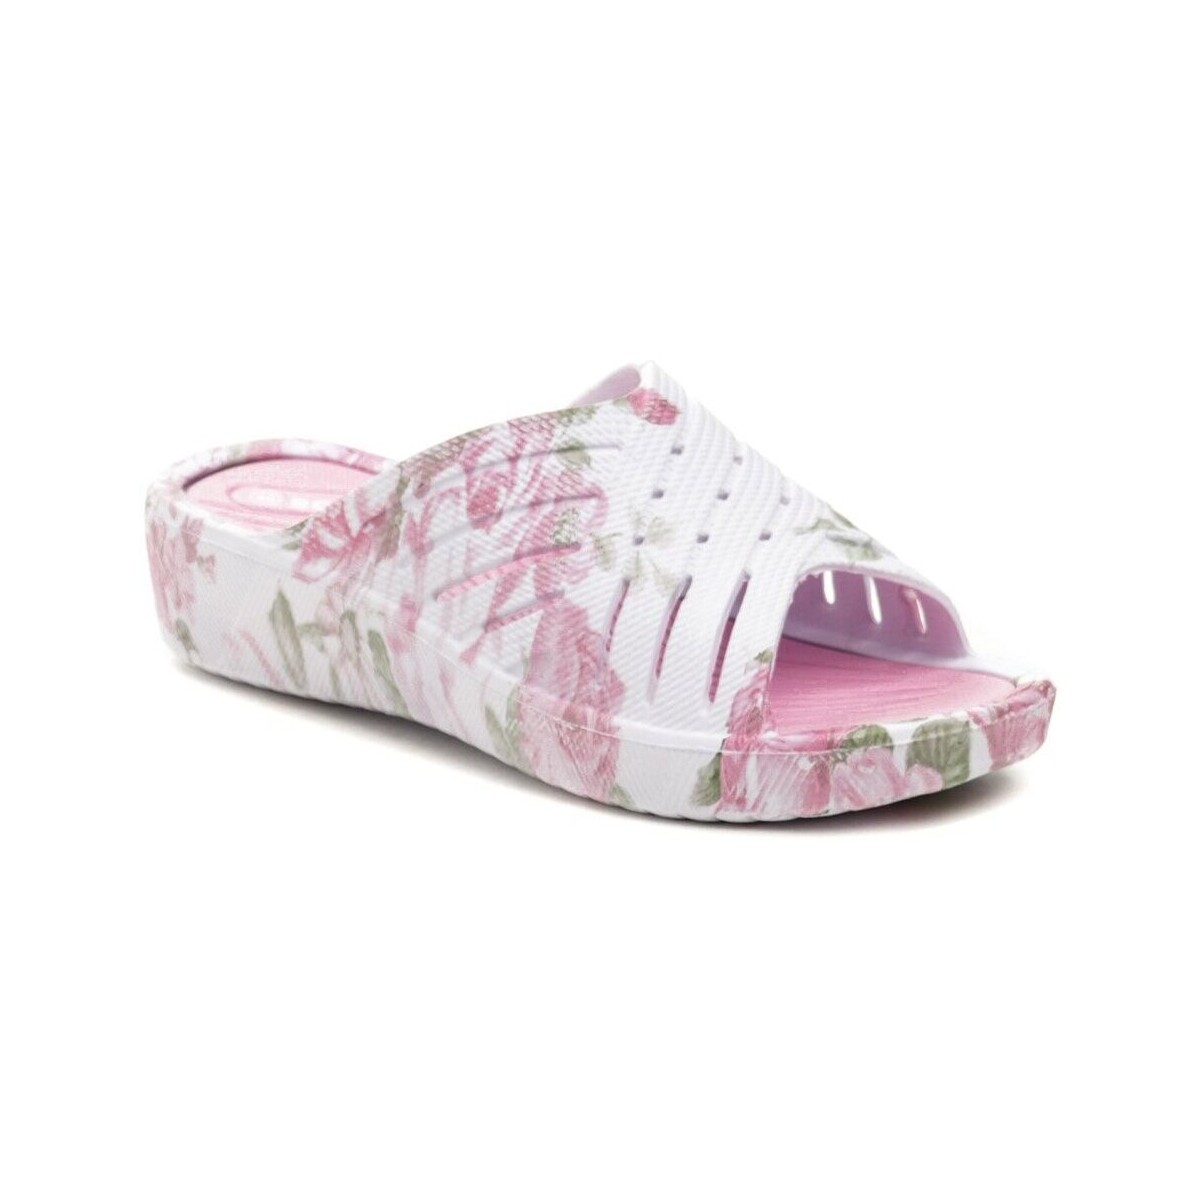 Boty Ženy pantofle Scandi 280-0022-S3 růžové dámské plážovky Růžová